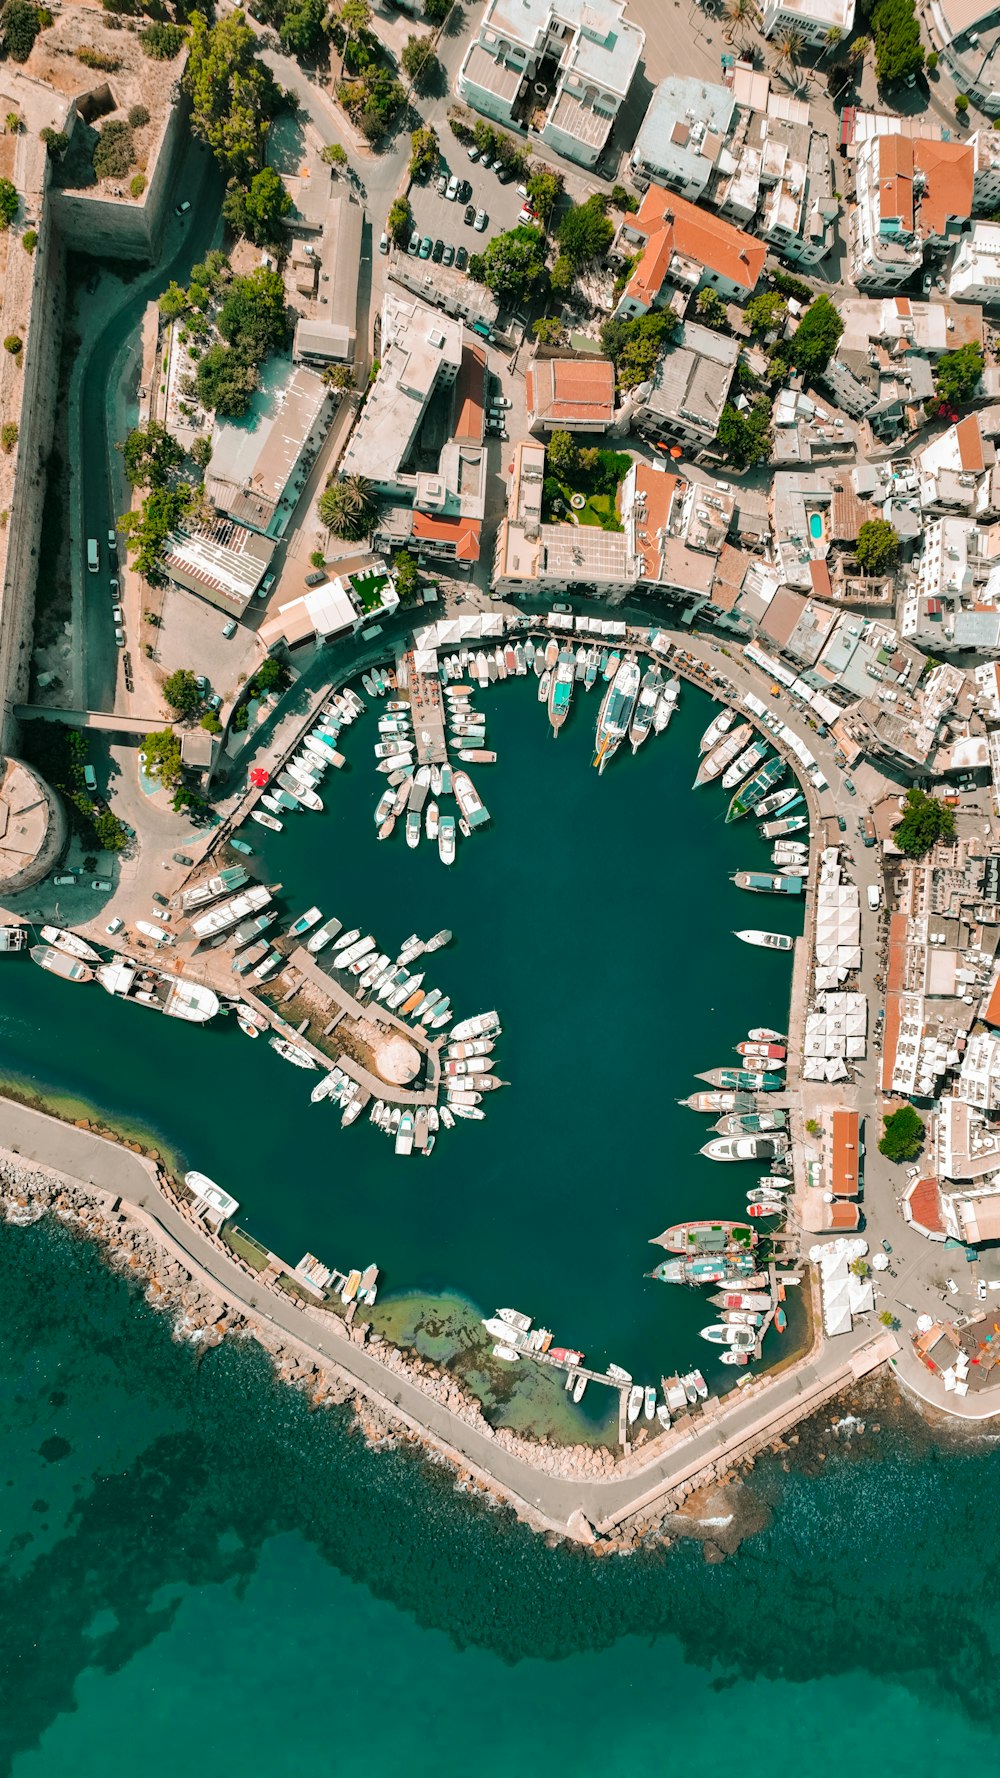 Una veduta aerea di un porto turistico con molte barche